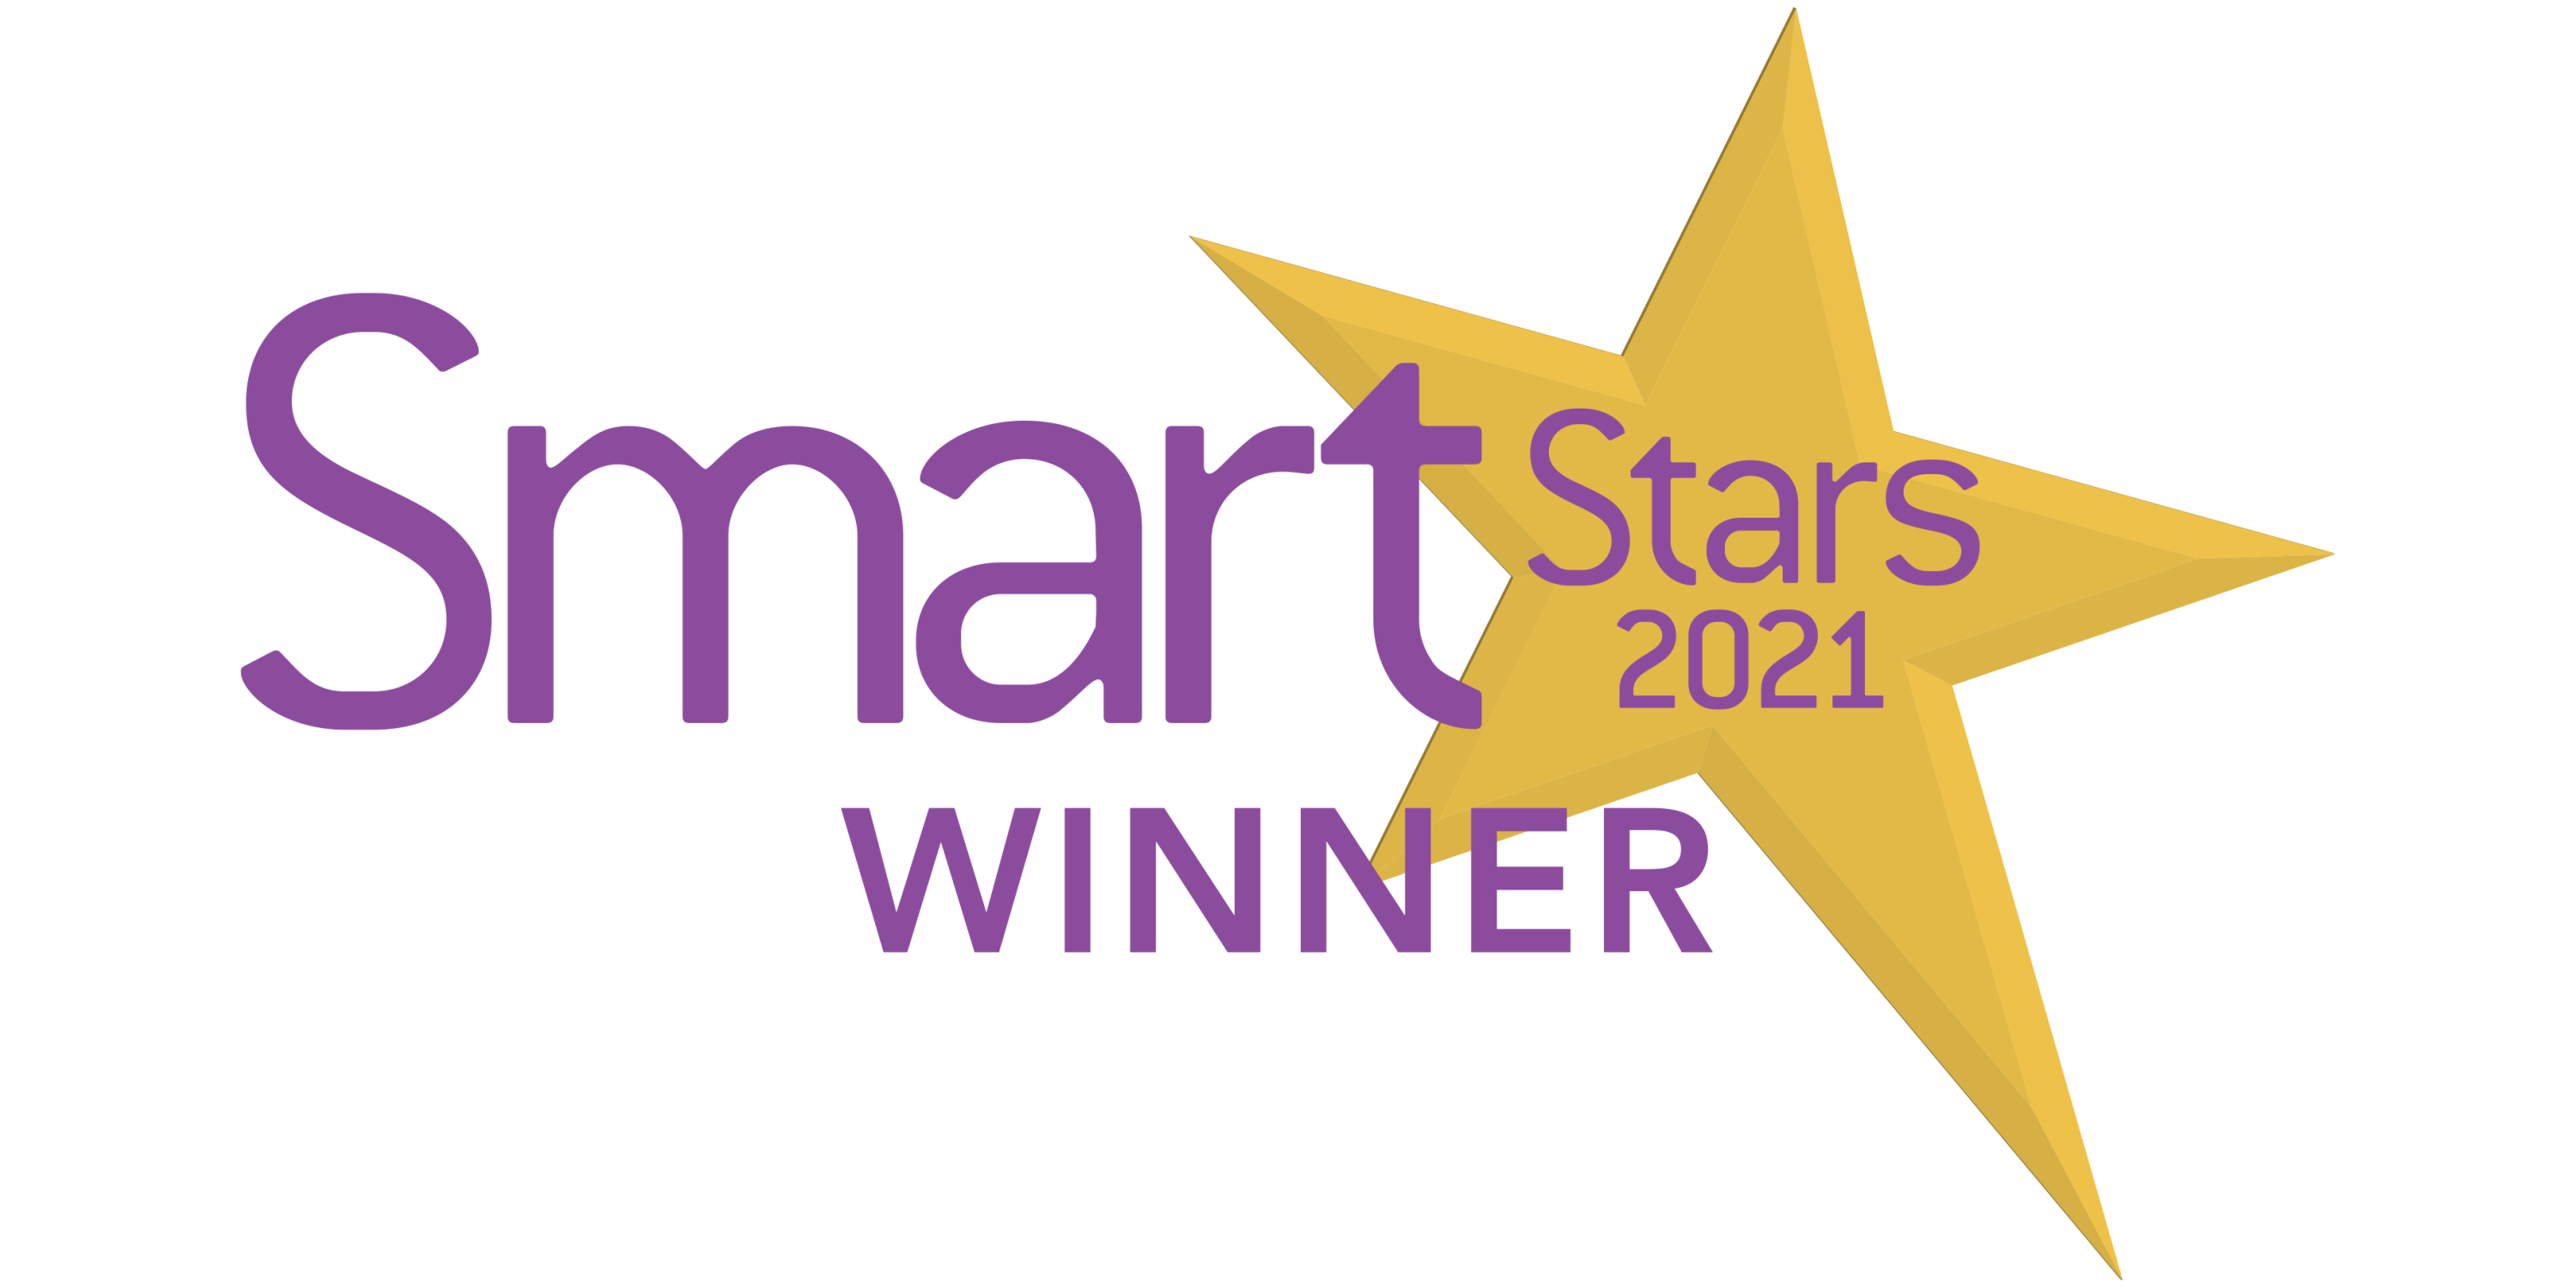 Smart-Stars-2021-Winner-logo_color_2to1